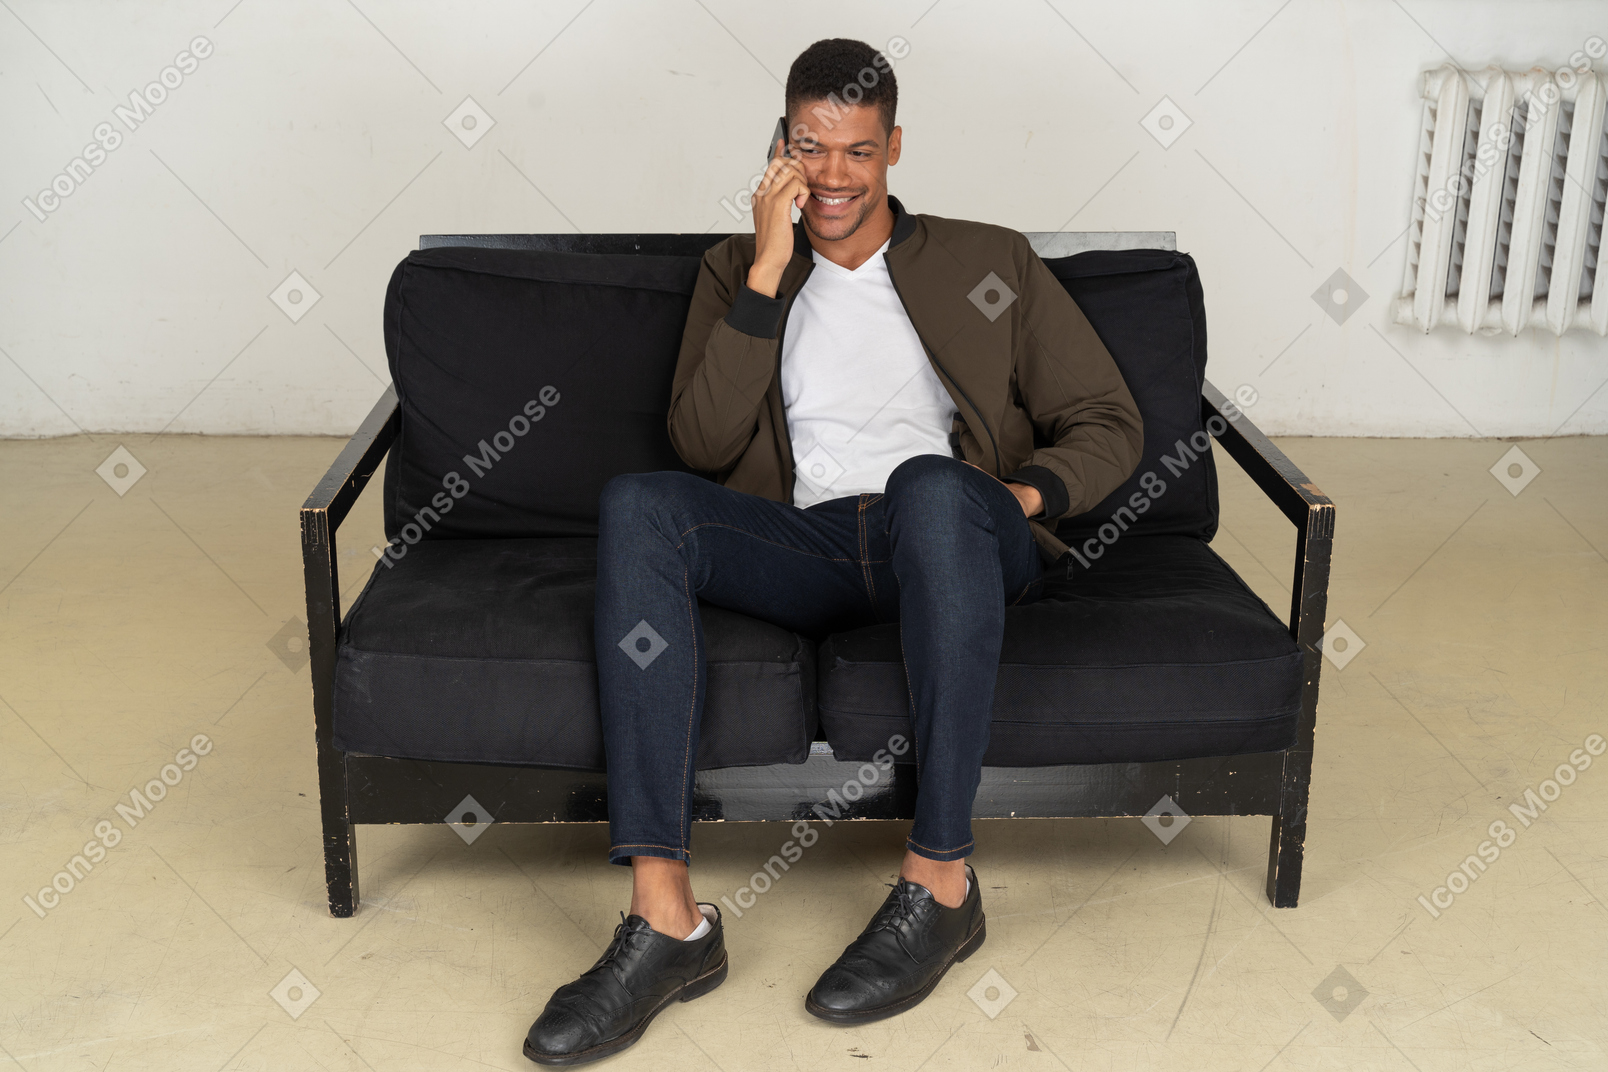 Vista frontal de um jovem sorridente, sentado em um sofá e falando ao telefone